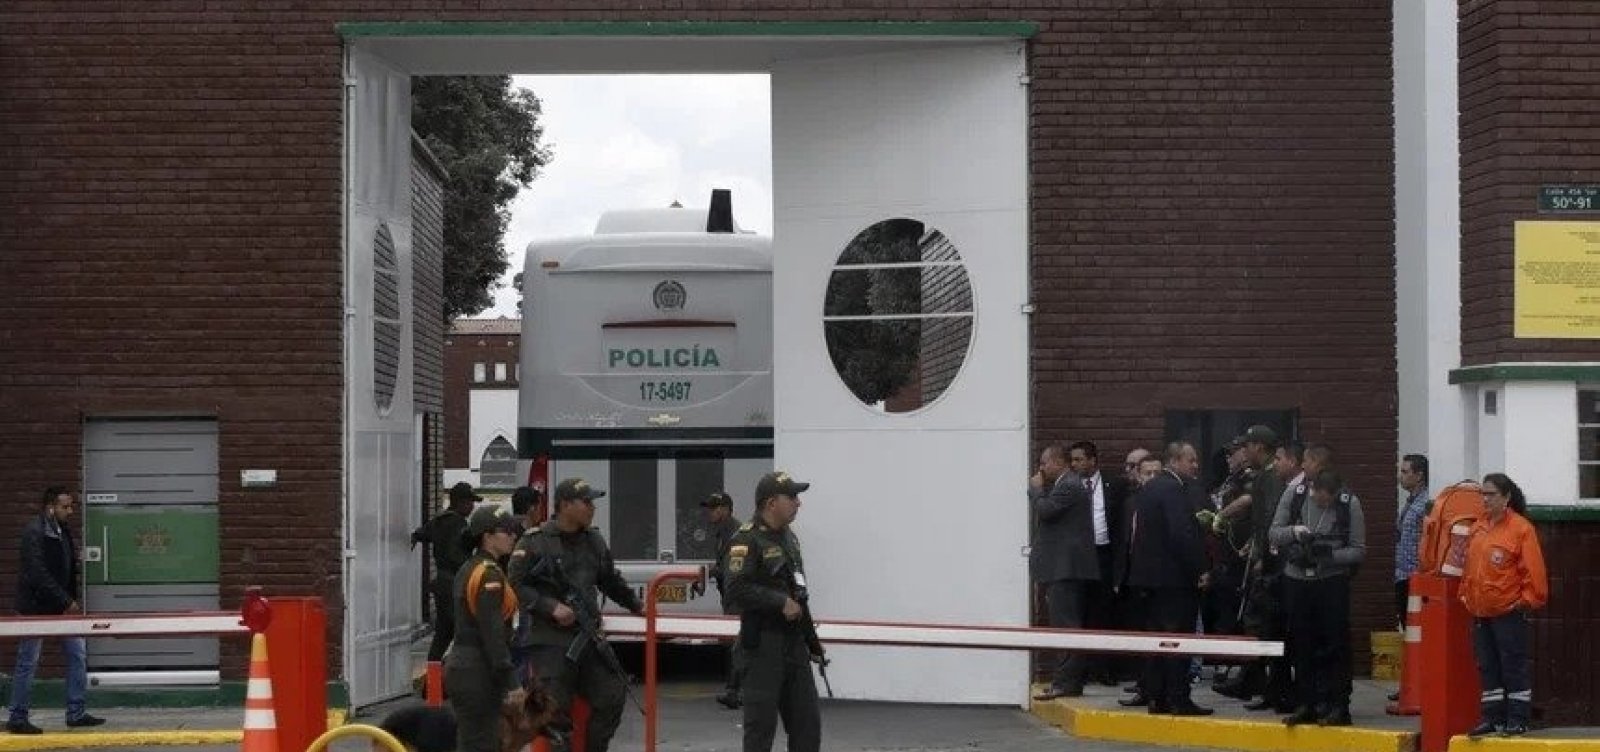 Guerrilha ELN reivindica responsabilidade em atentado que matou 20 em Bogotá